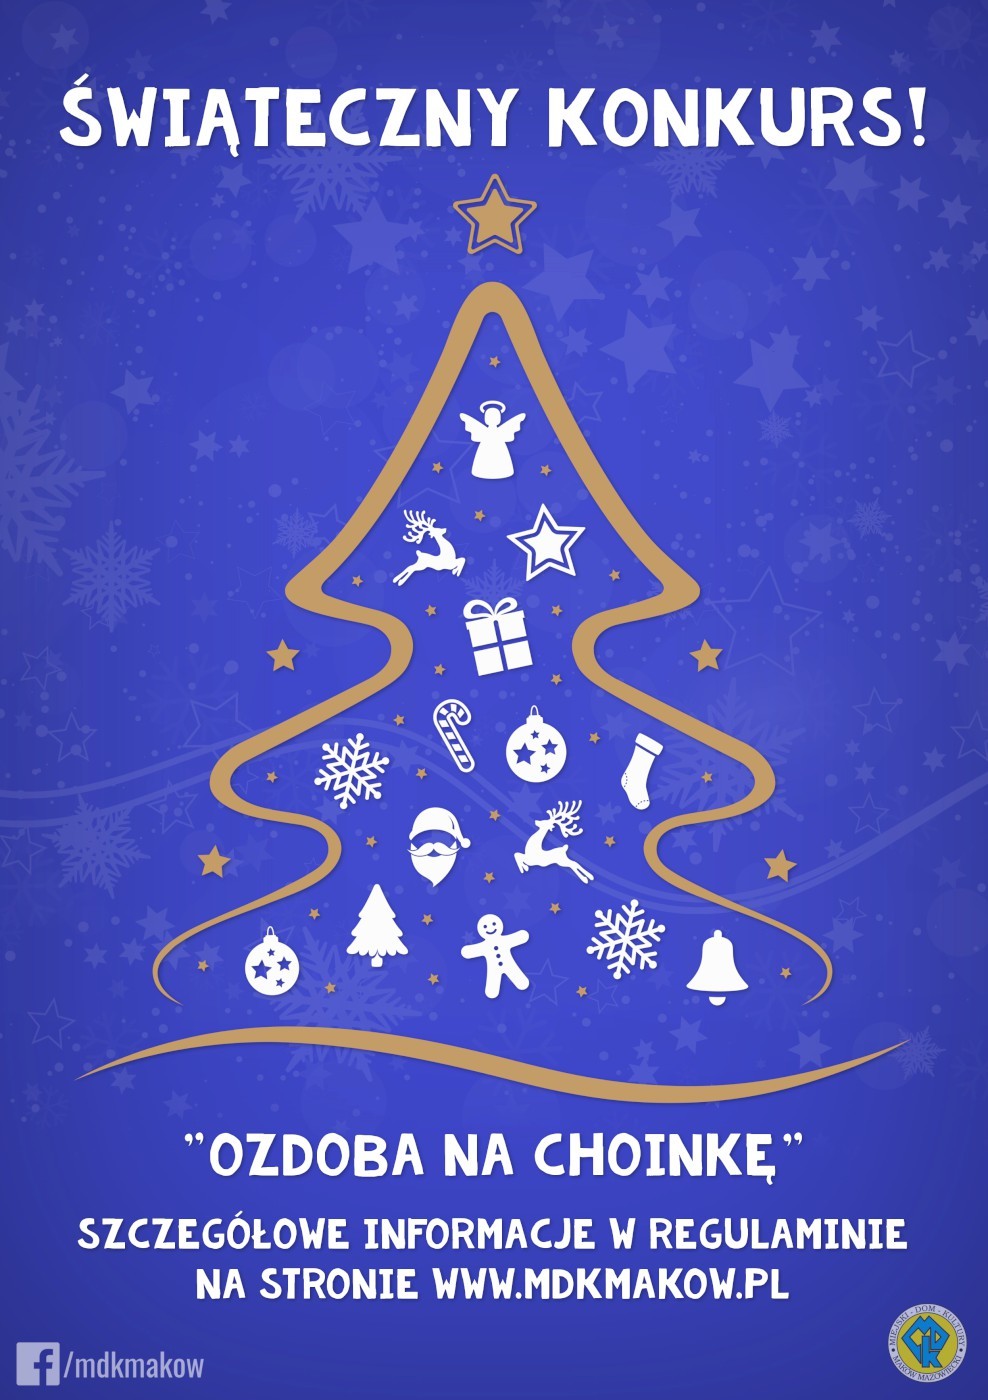 Grafika konkursu świątecznego ozdoba na choinkę. Na niebieskim tle ze śnieżynkami na środku zarys choinki i osób. 